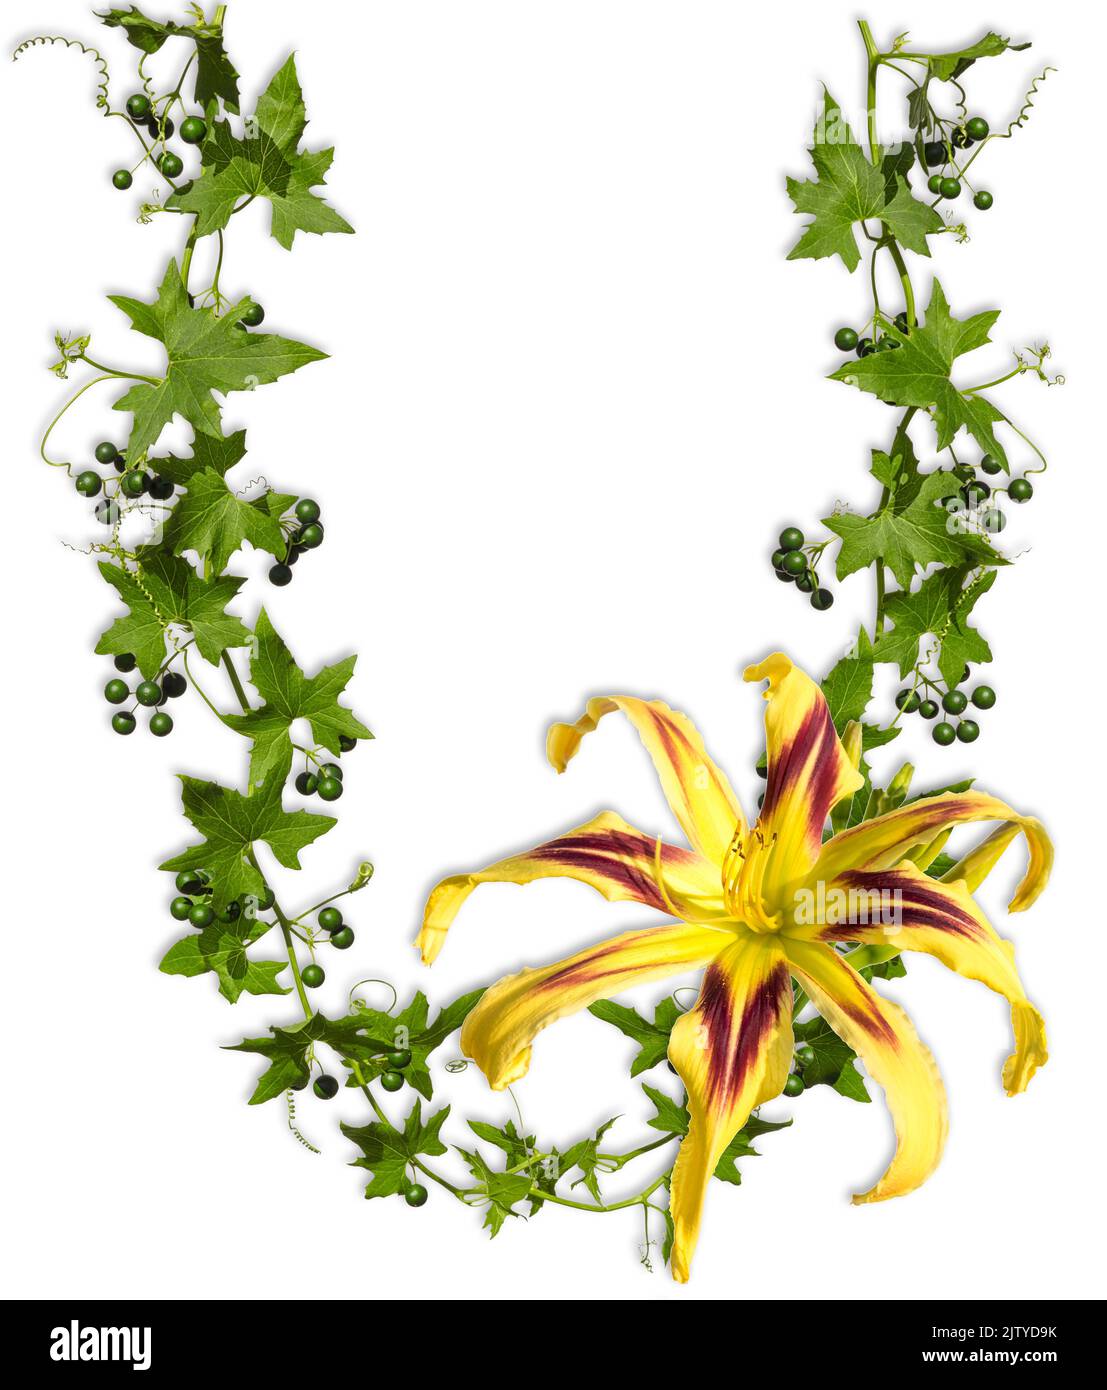 Hojas de hiedra en forma de U con flor de hemerocallis aisladas sobre fondo blanco como marco. Foto de stock